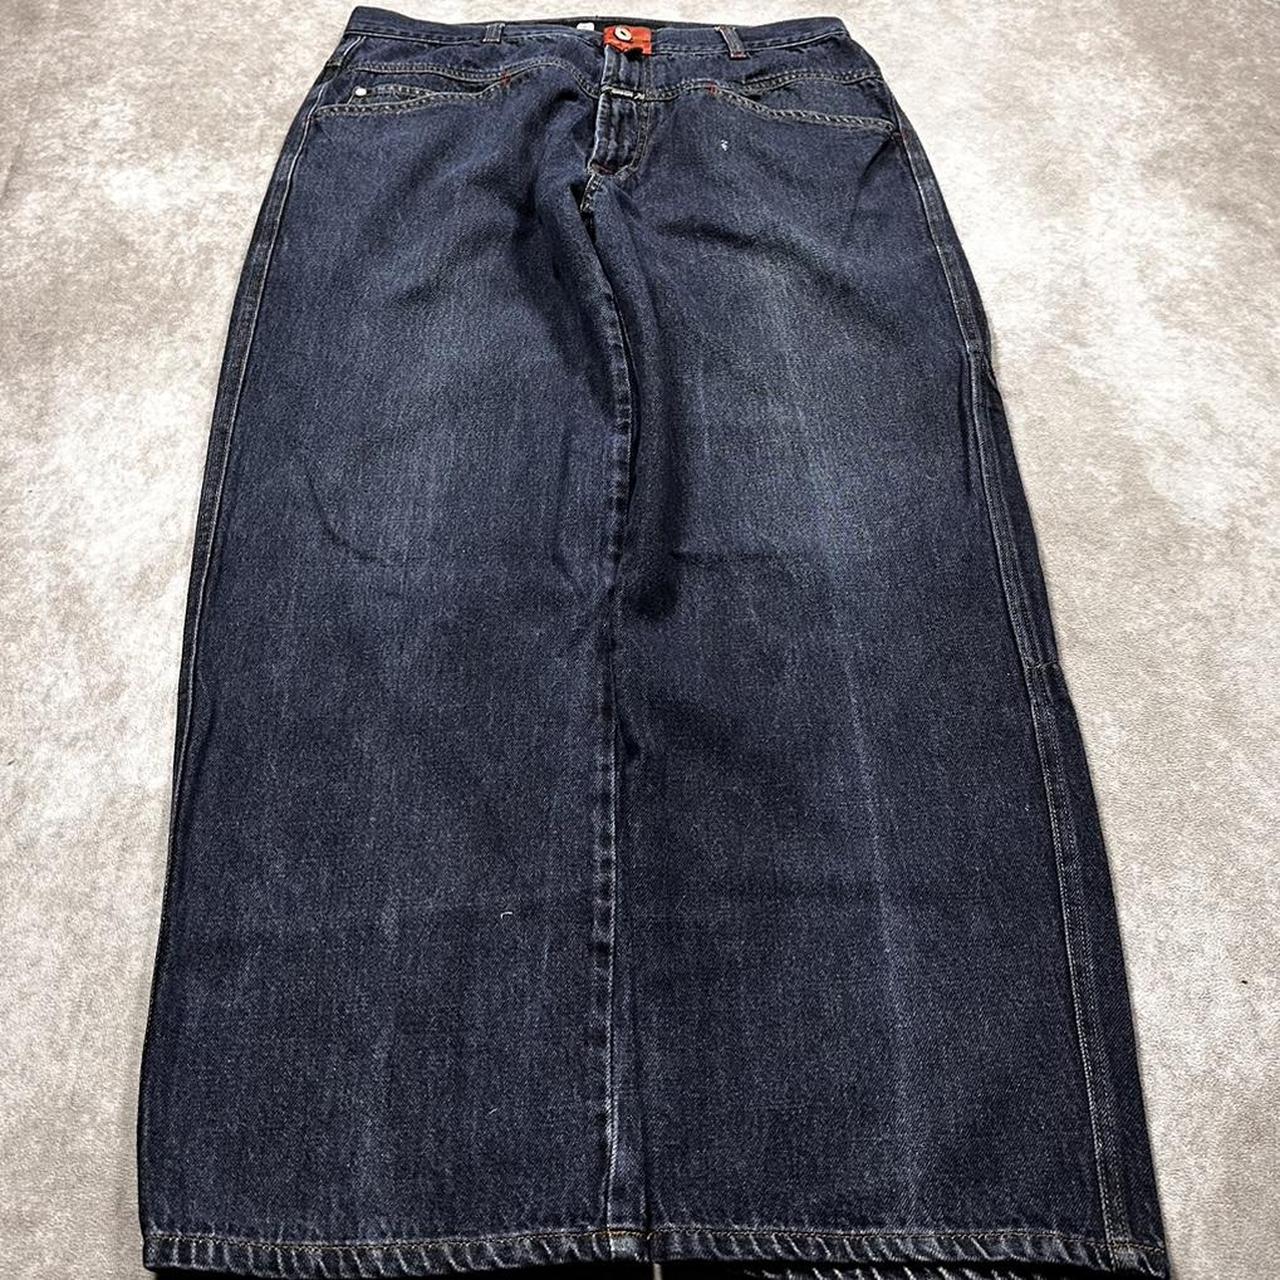 Y2K Baggy MFG Jeans Essential Pair Super Hard Faded... - Depop